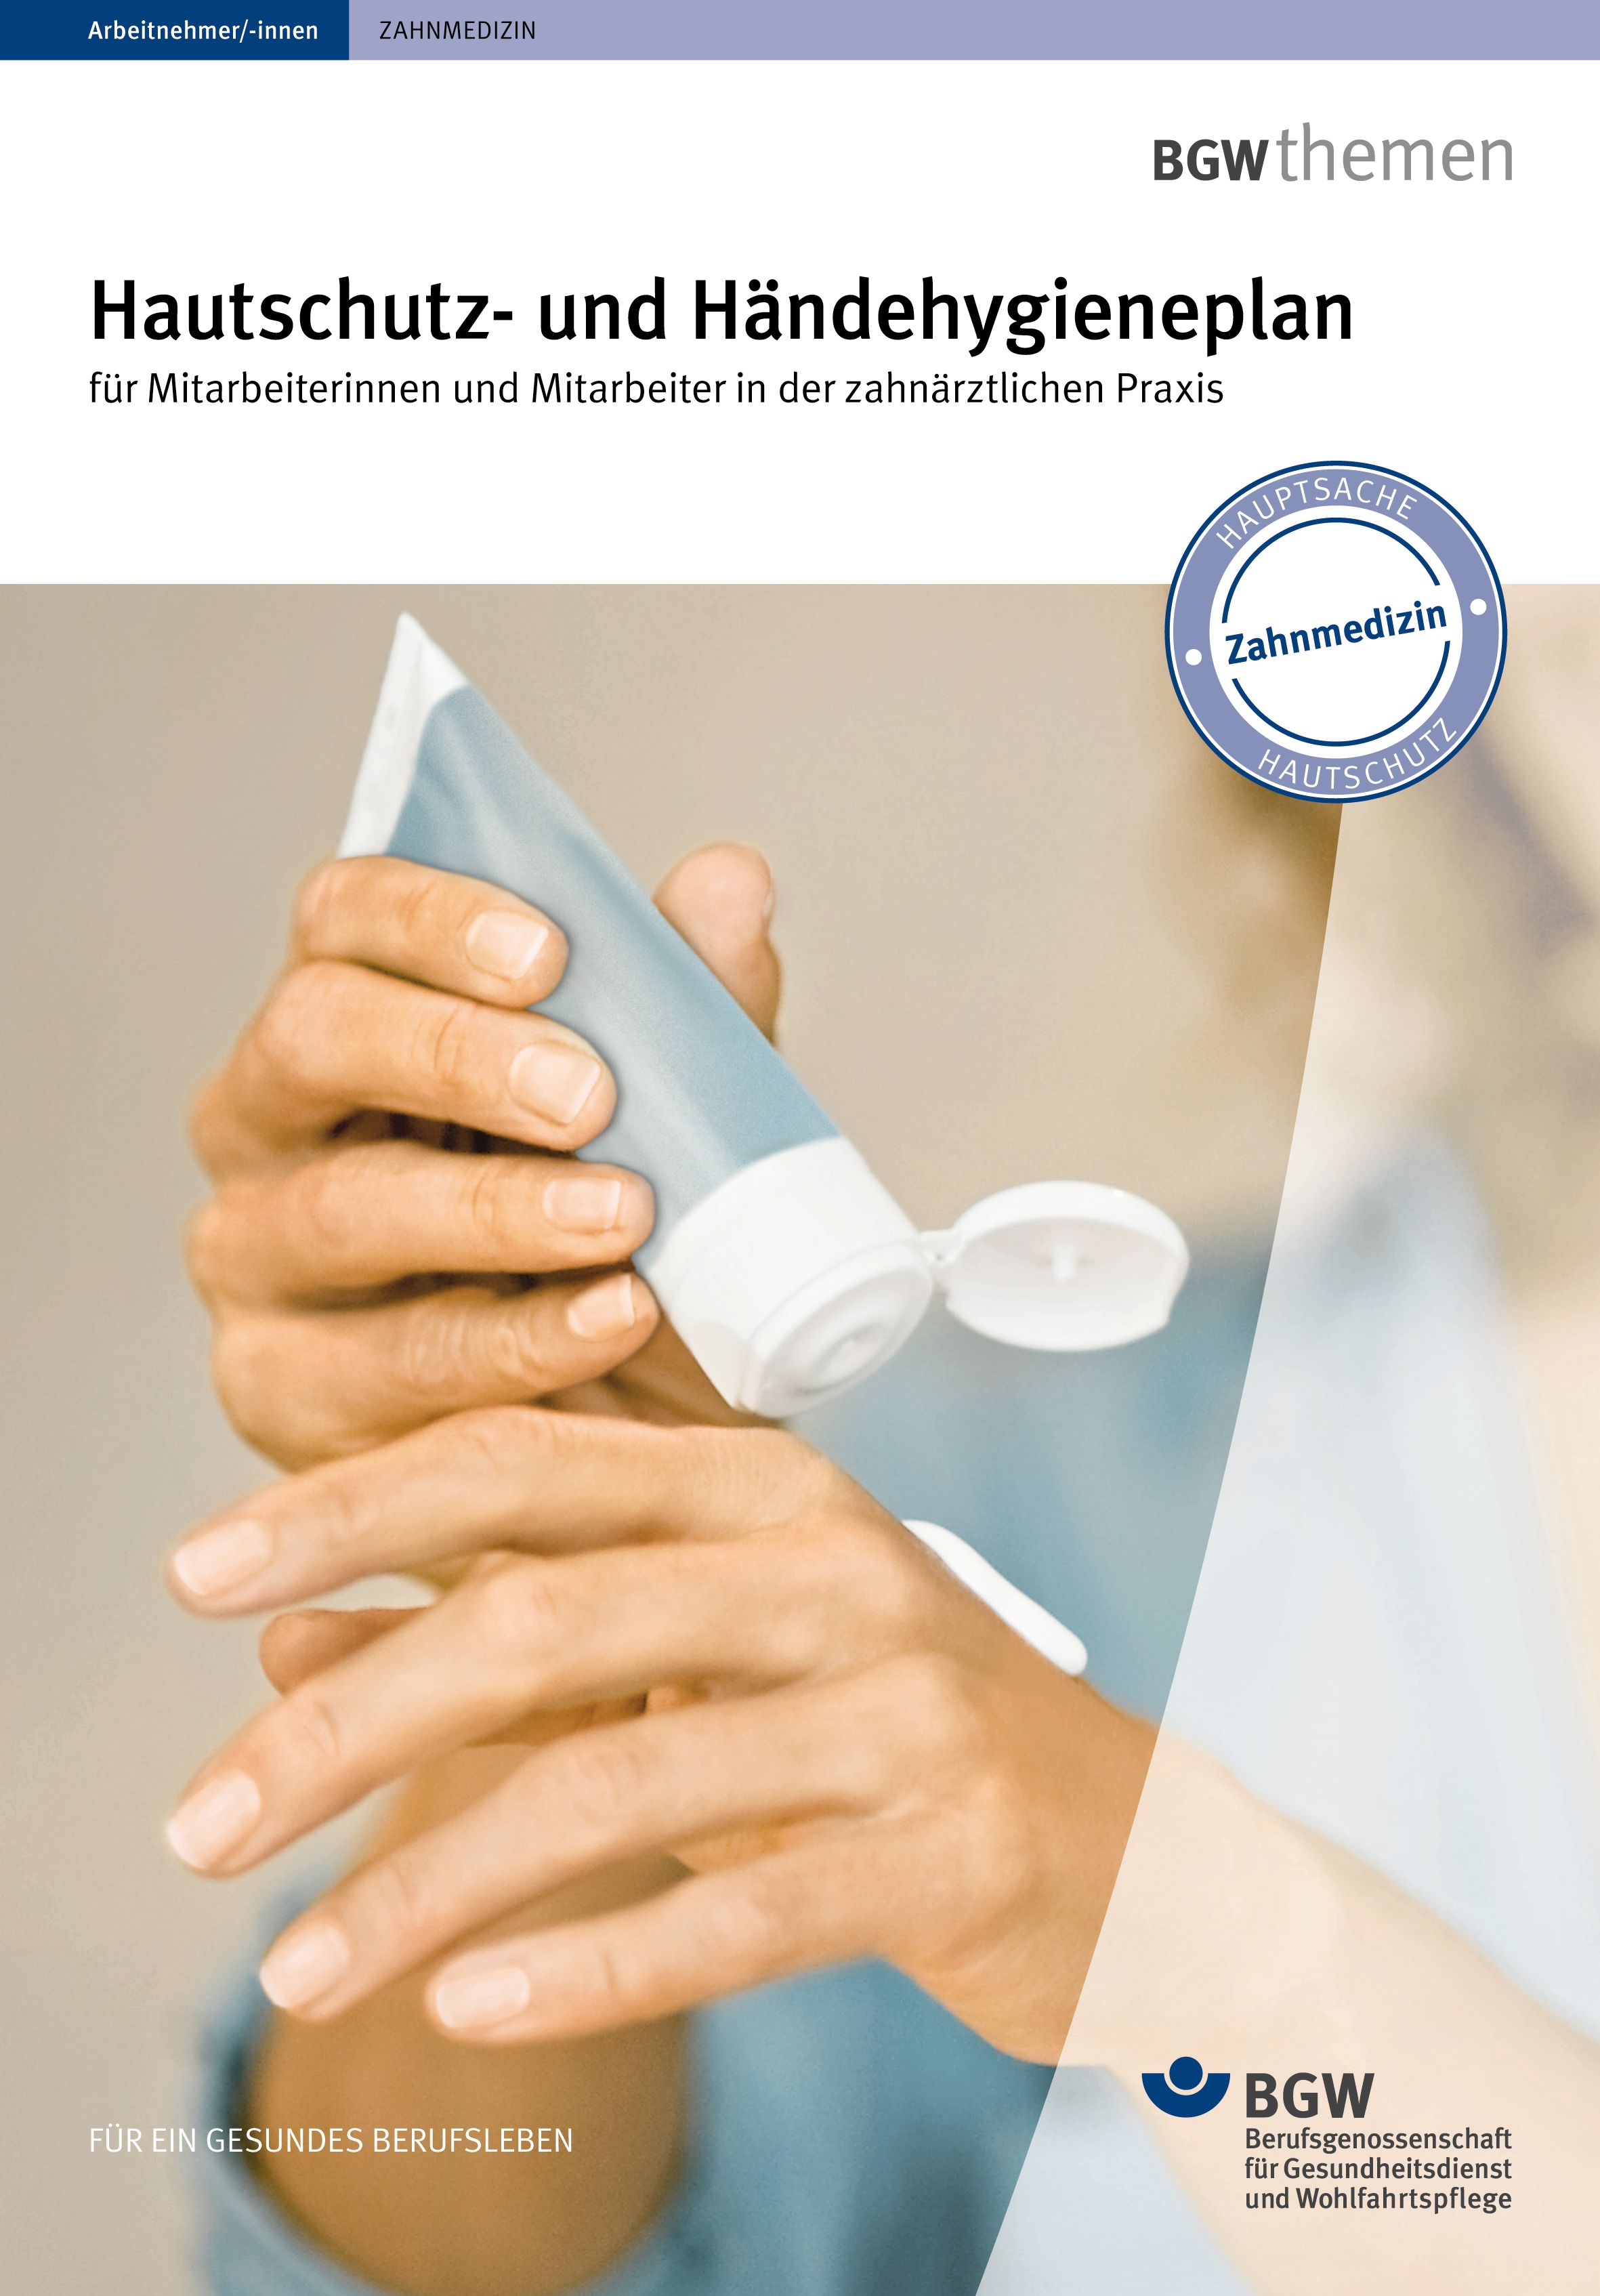 Titel: Hautschutz- und Händehygieneplan für Mitarbeiterinnen und Mitarbeiter in der Zahnarztpraxis - Junge Frau appliziert sich Handcreme aus der Tube auf die Hand